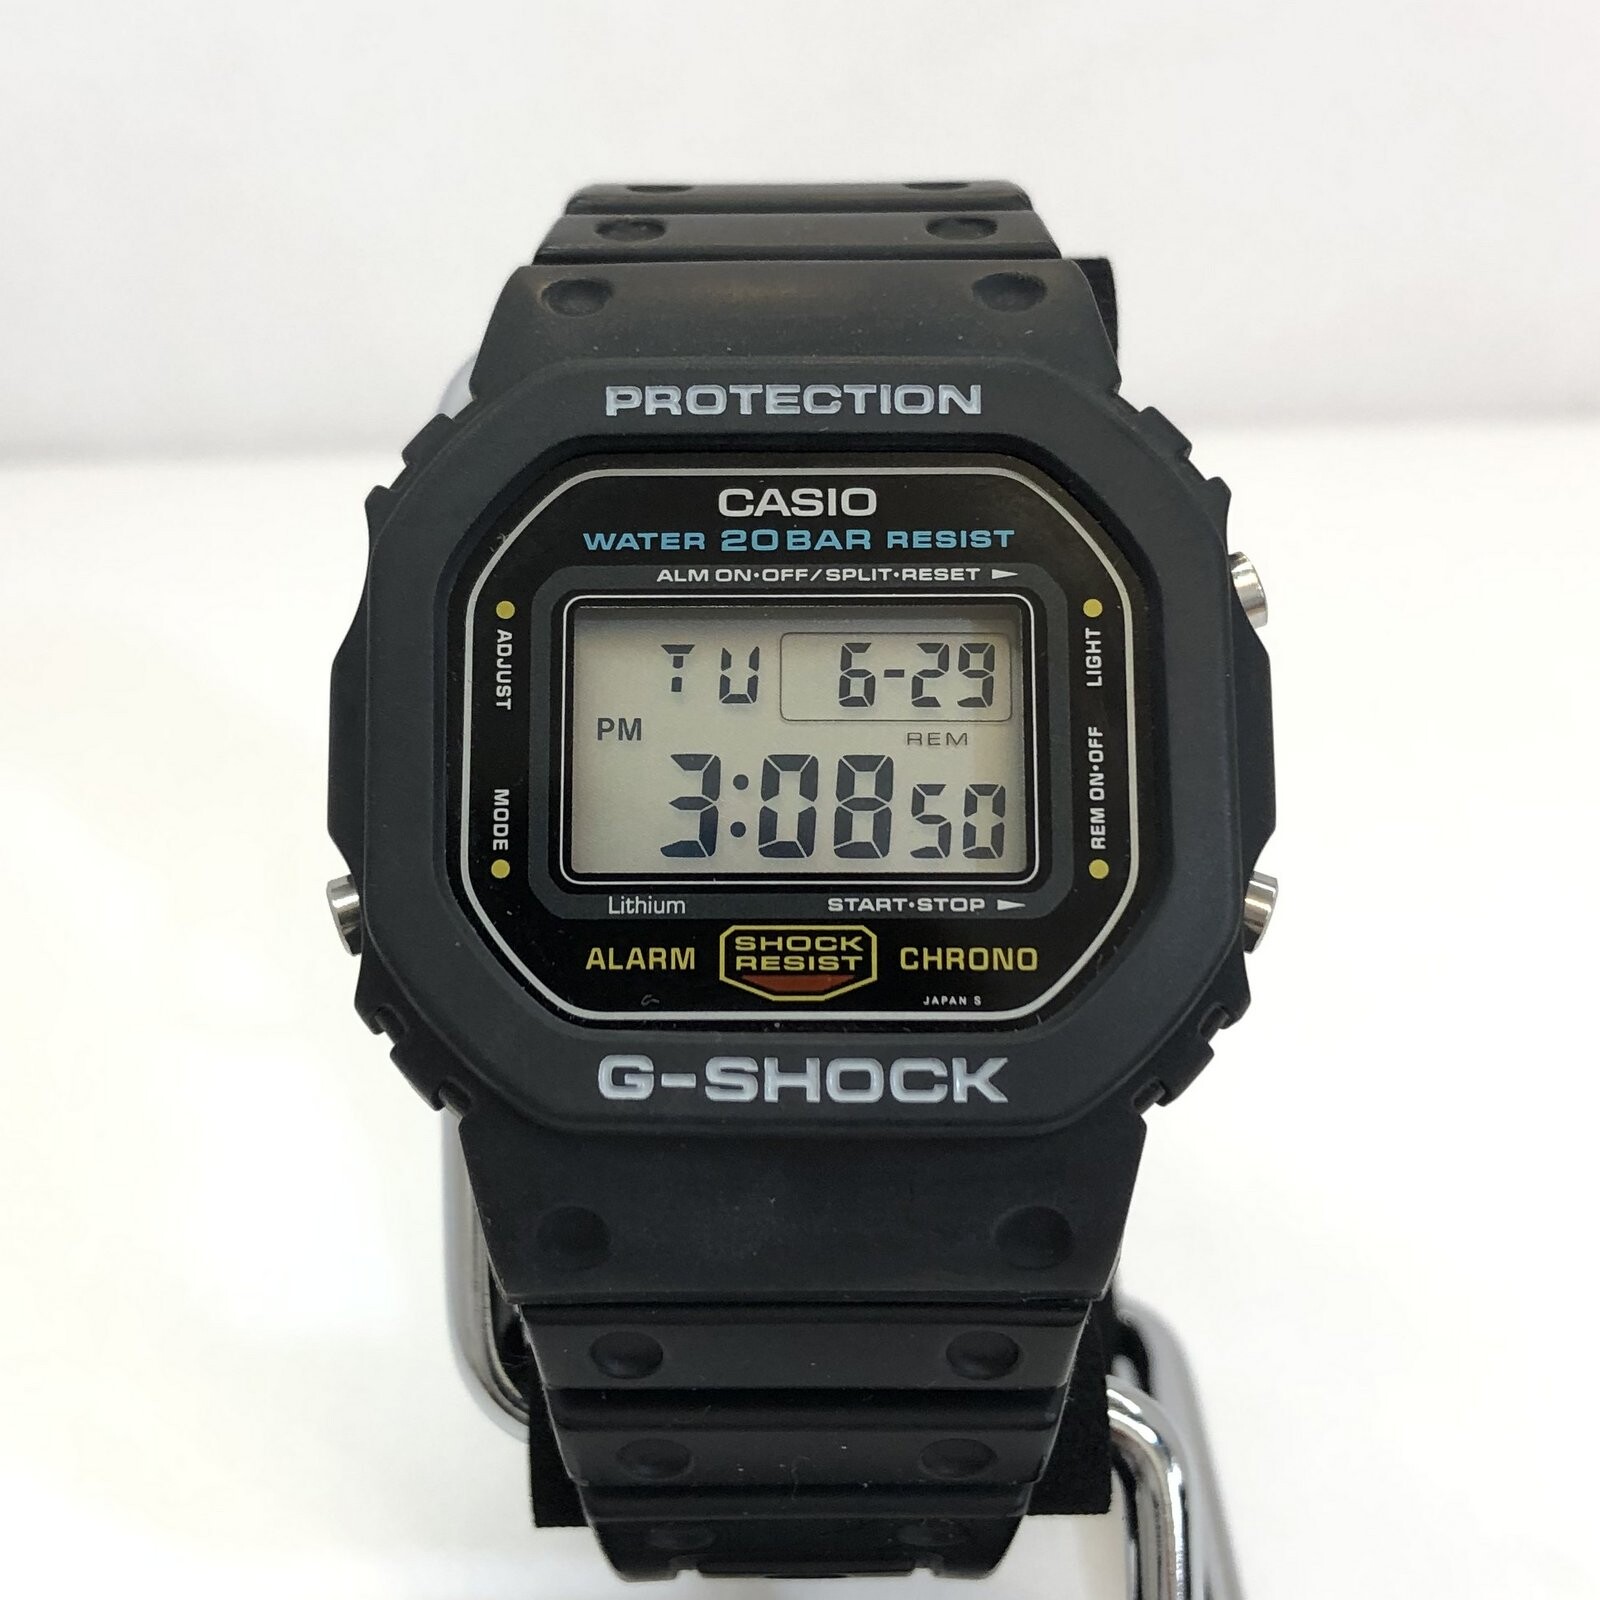 G-SHOCK G-SHOCK CASIO Casio watch DW-5600C 901 screw back speed